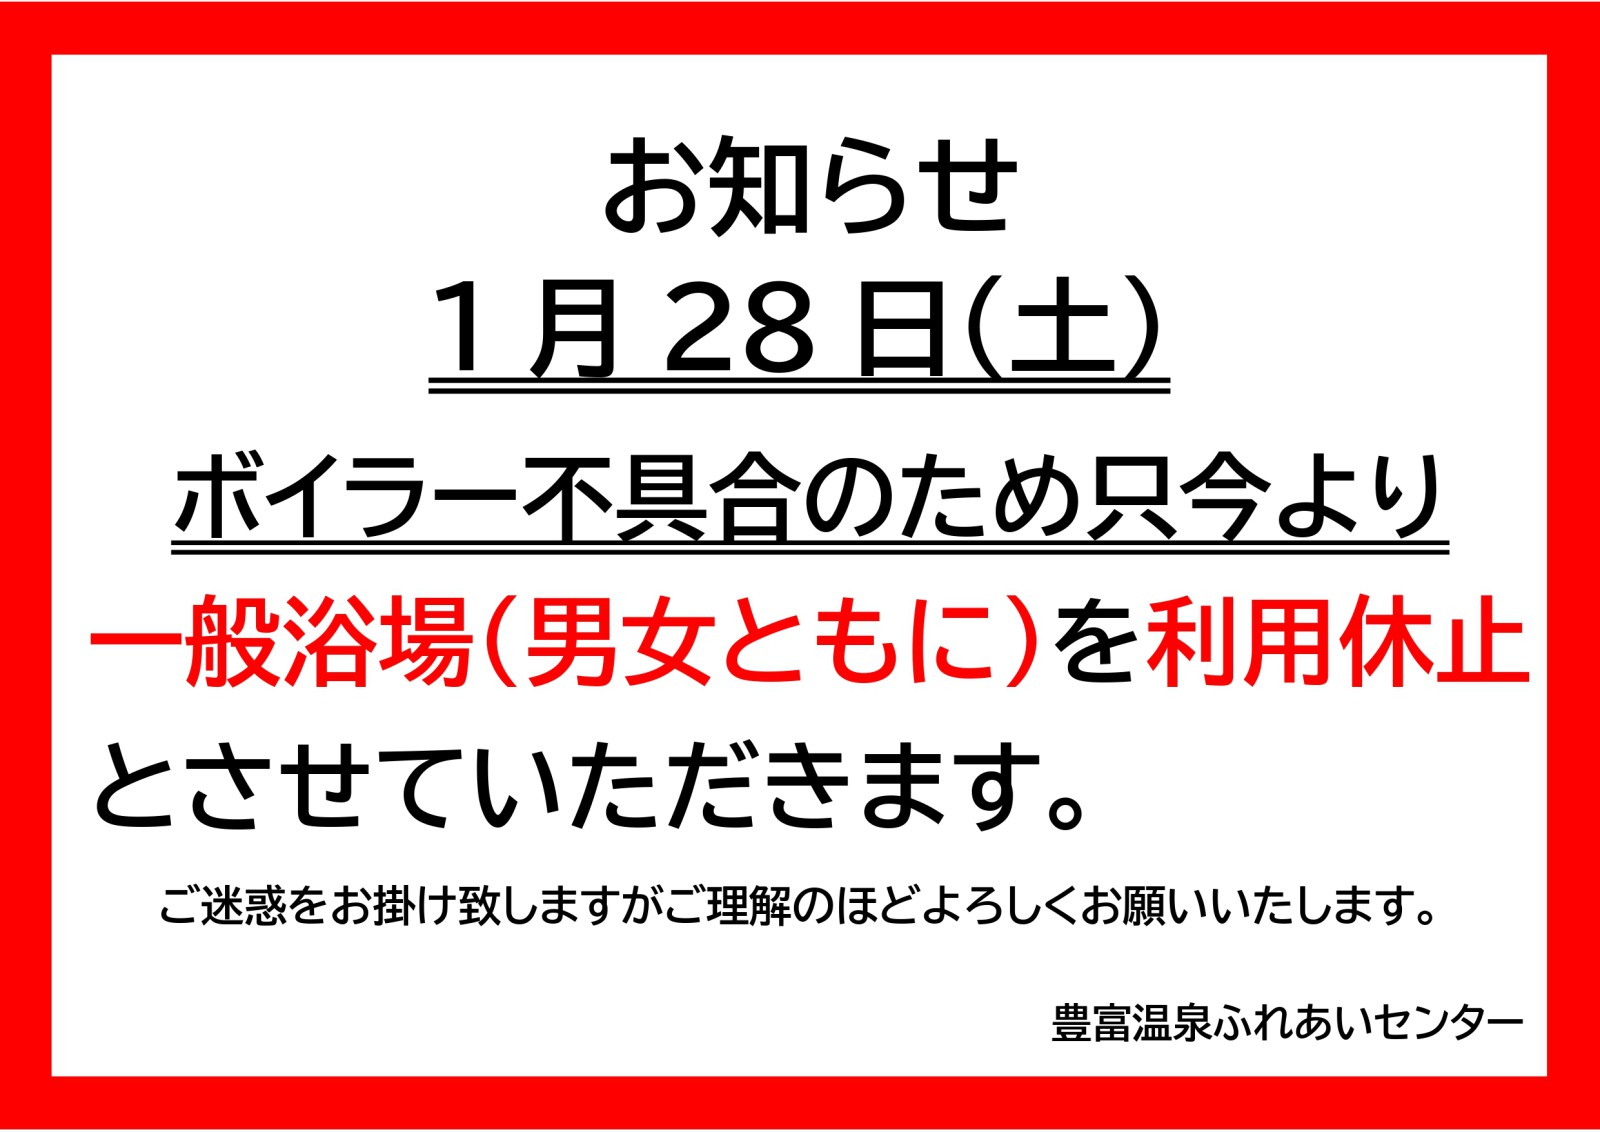 【ふれあいセンター】一般浴場休止のお知らせ　※1/28(土）10:00現在